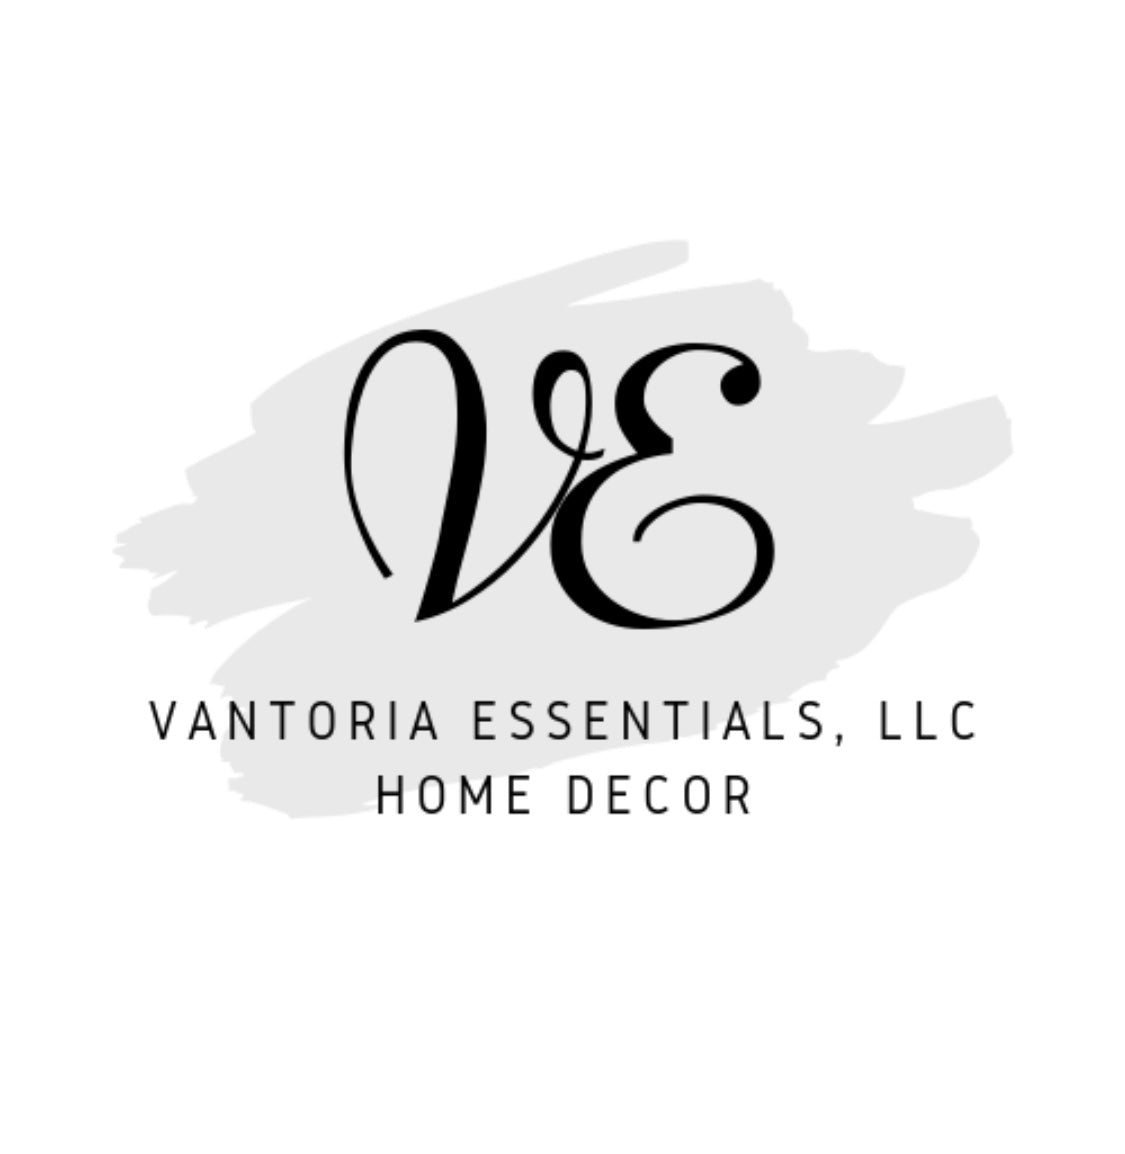 Vantoria Essentials, LLC